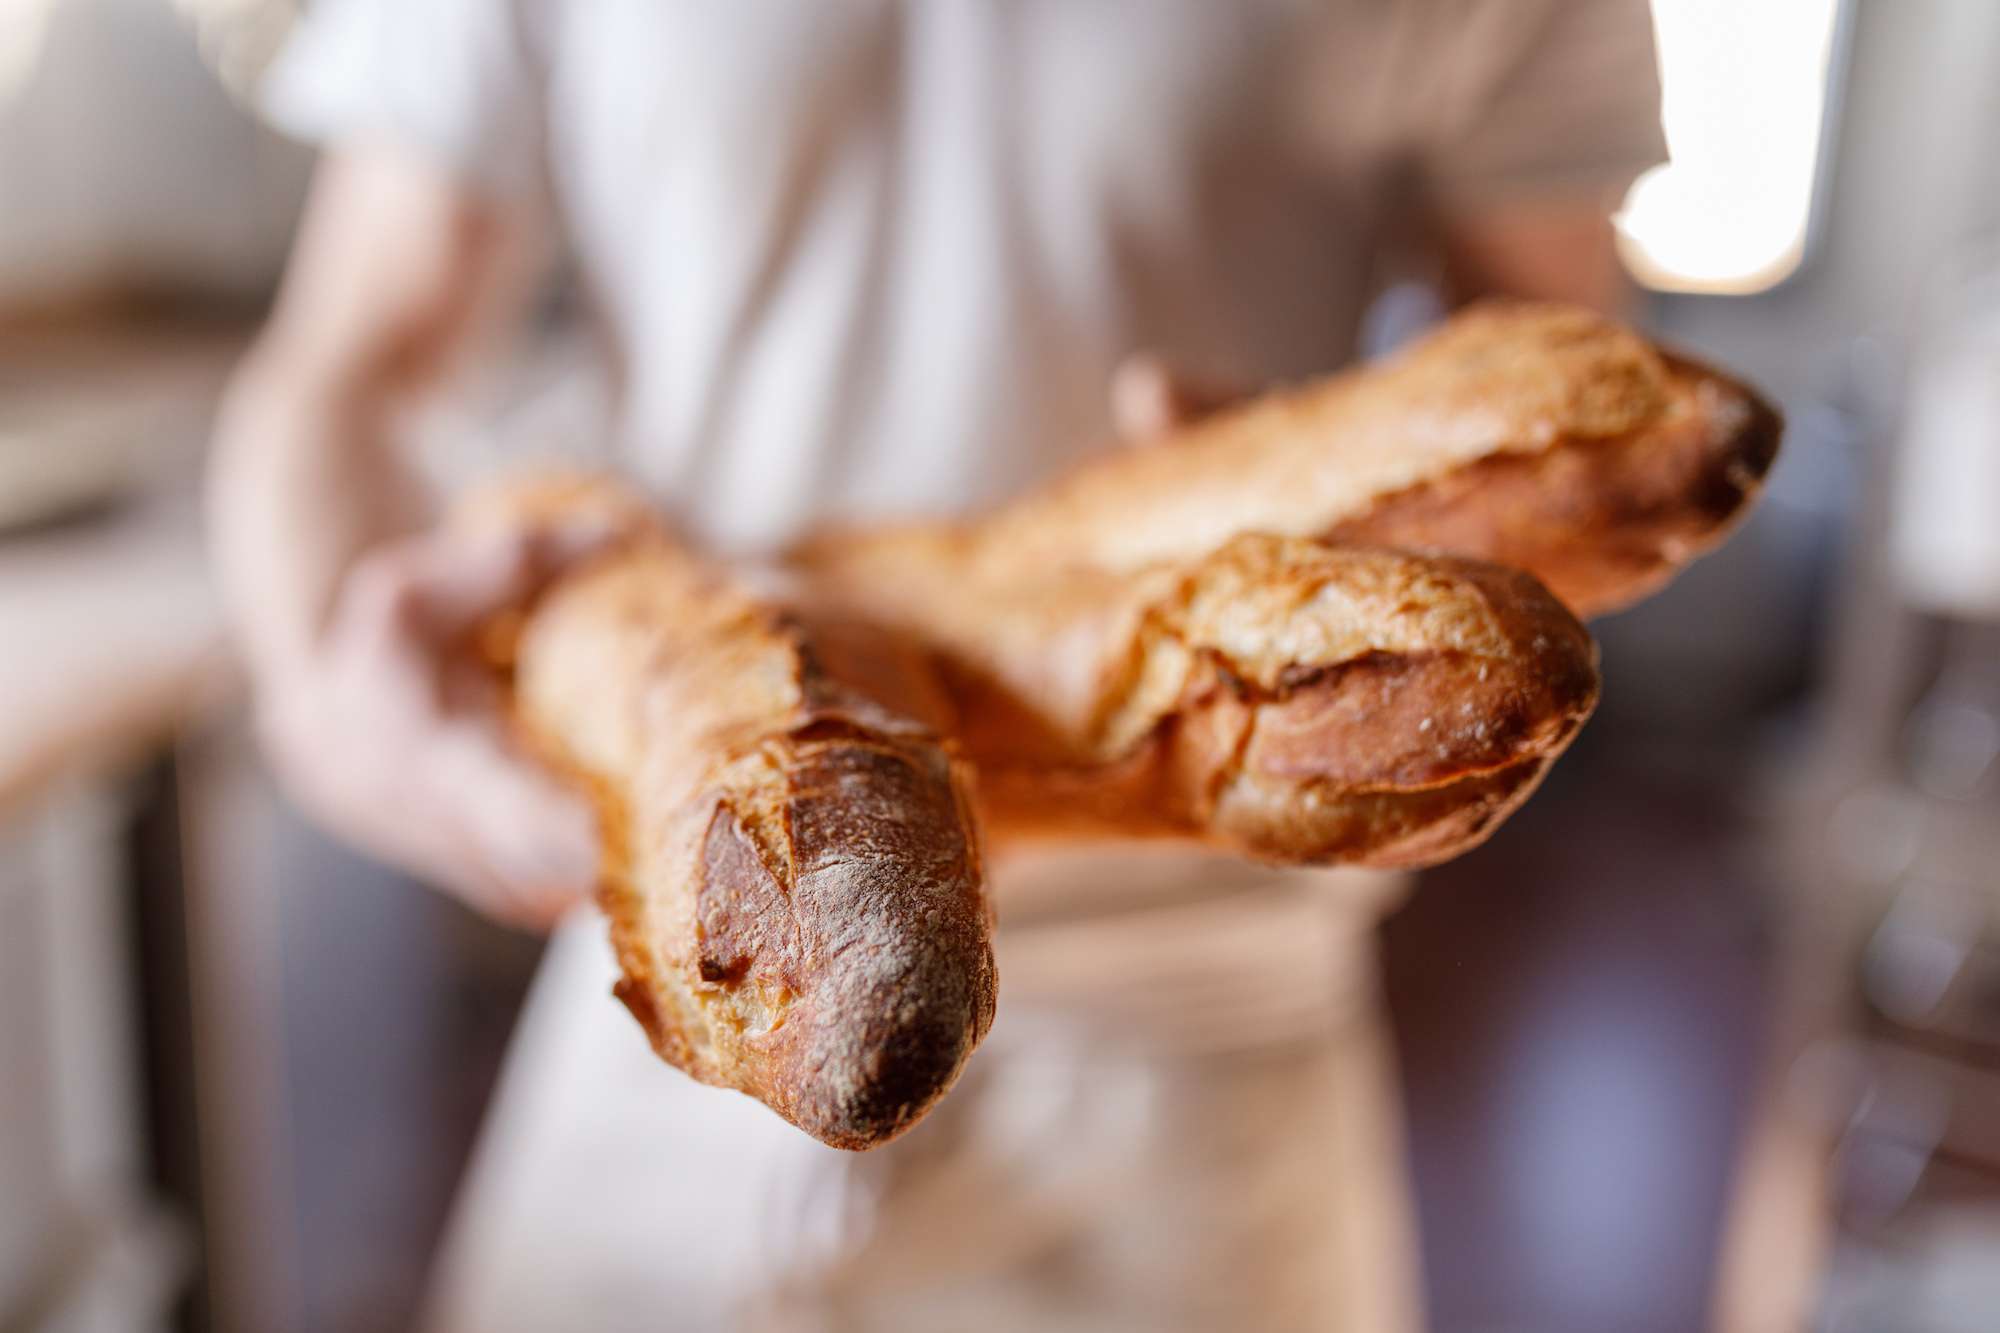 Primer plano de una mano sujetando panes de baguette franceses